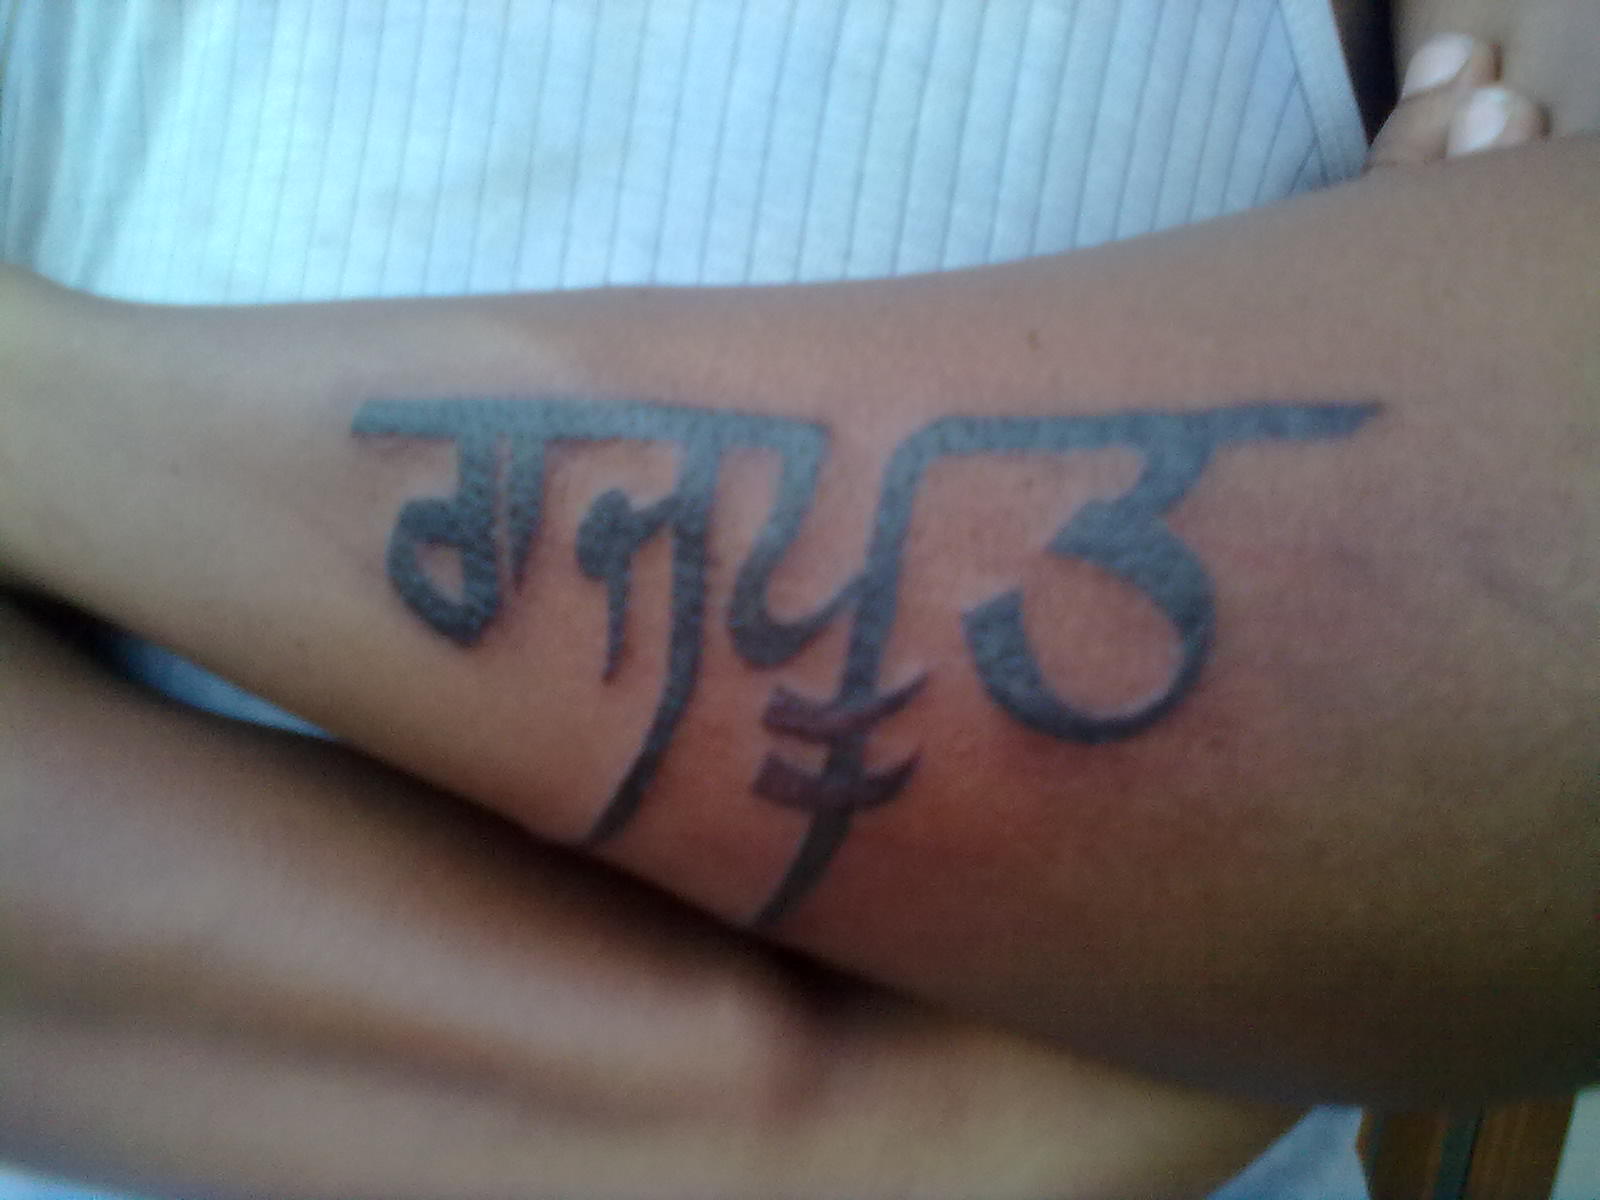 Rajput Punjabi Font Tattoo On Arm Sleeve